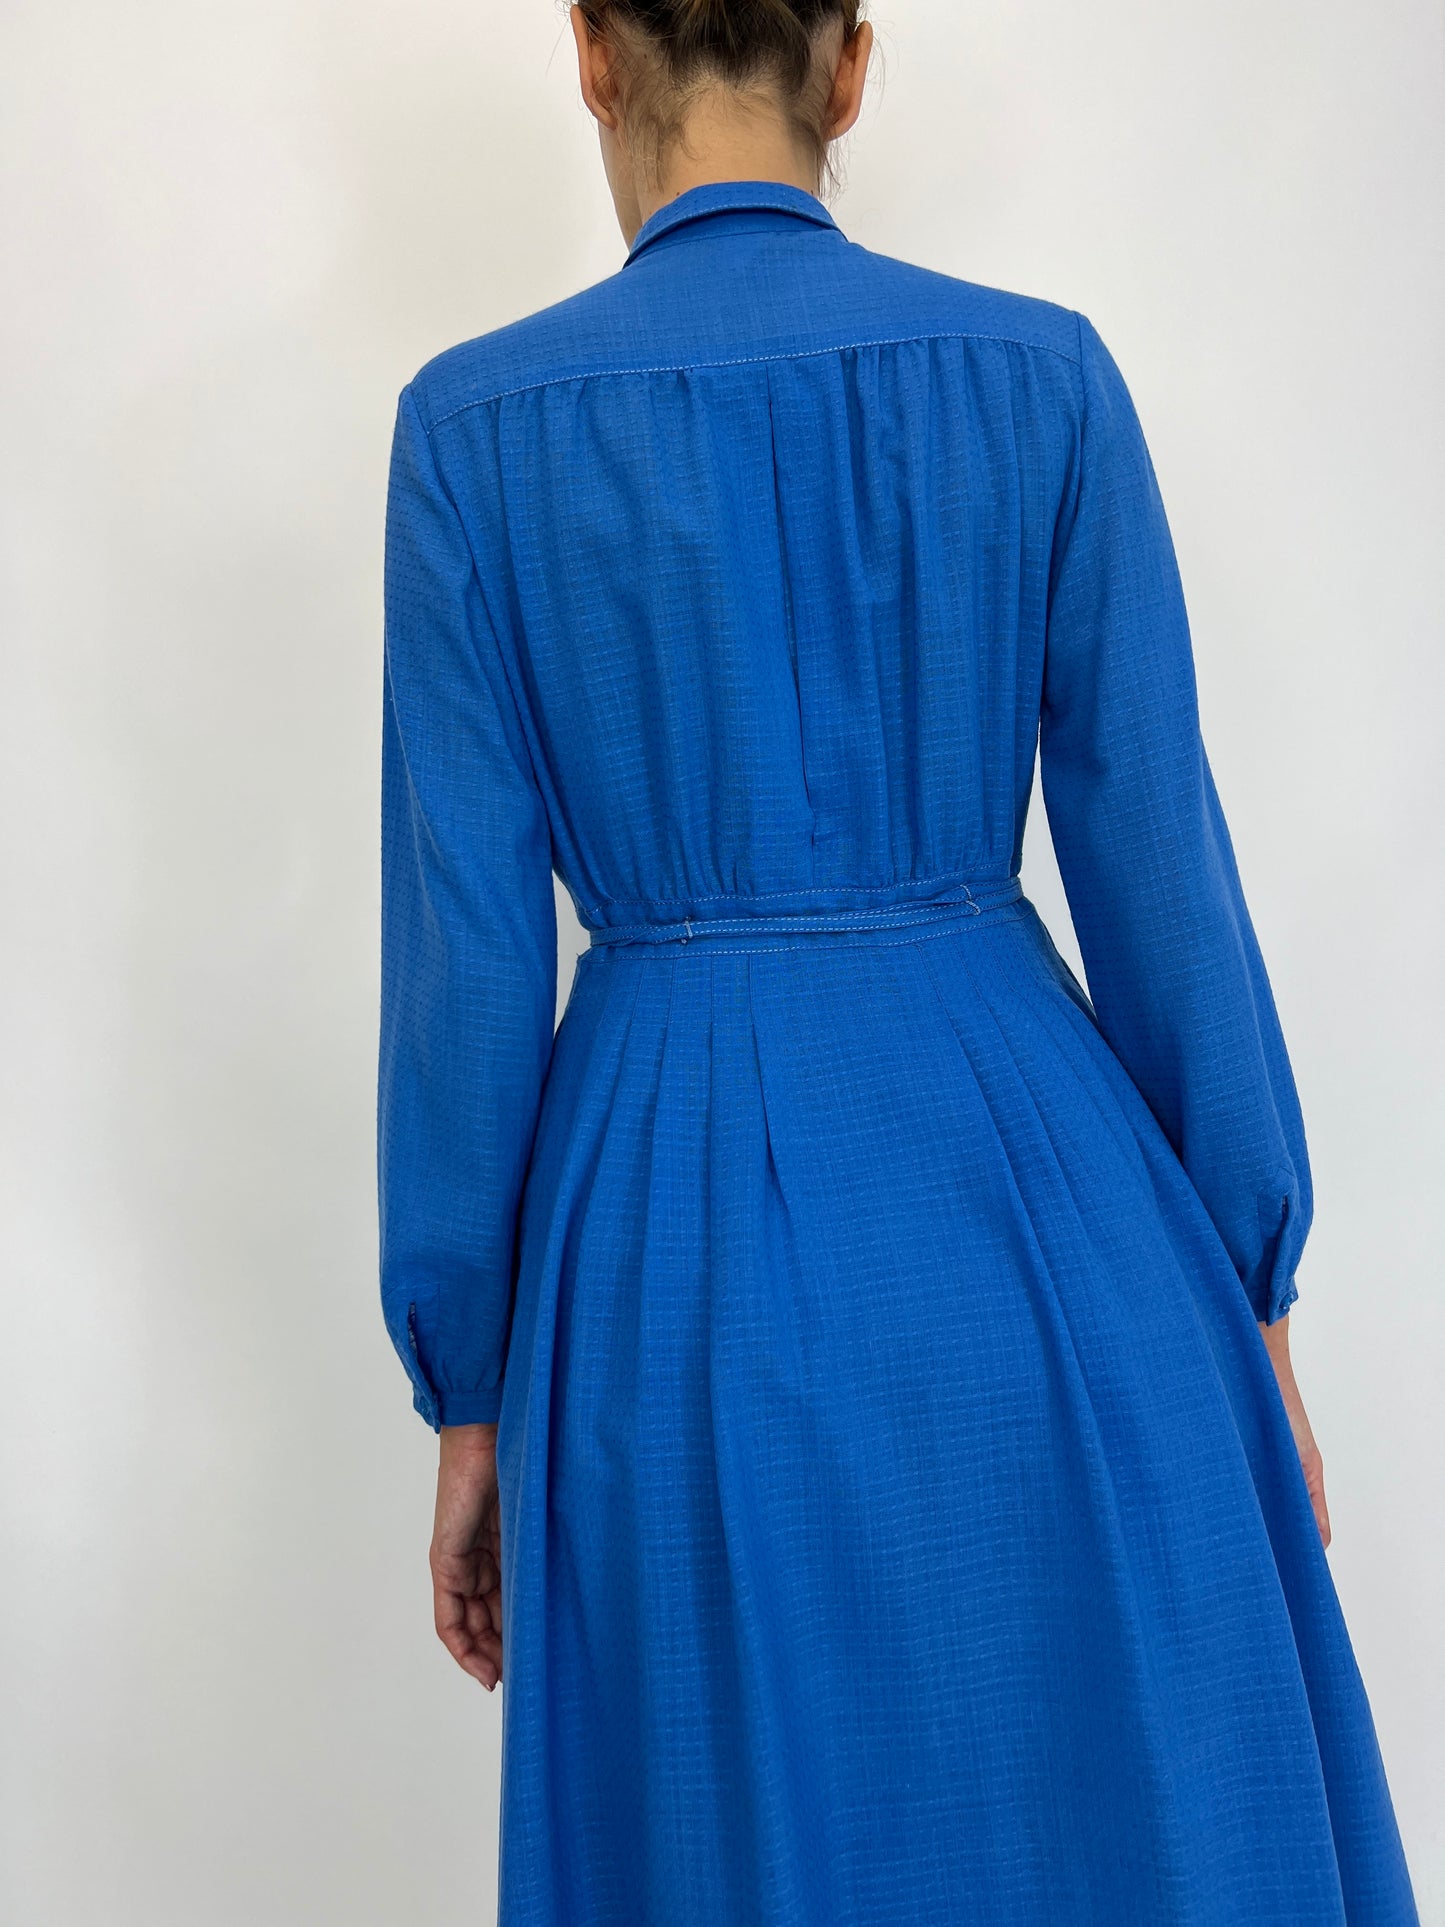 Rochie vintage albastru ciel lana extrafina texturată